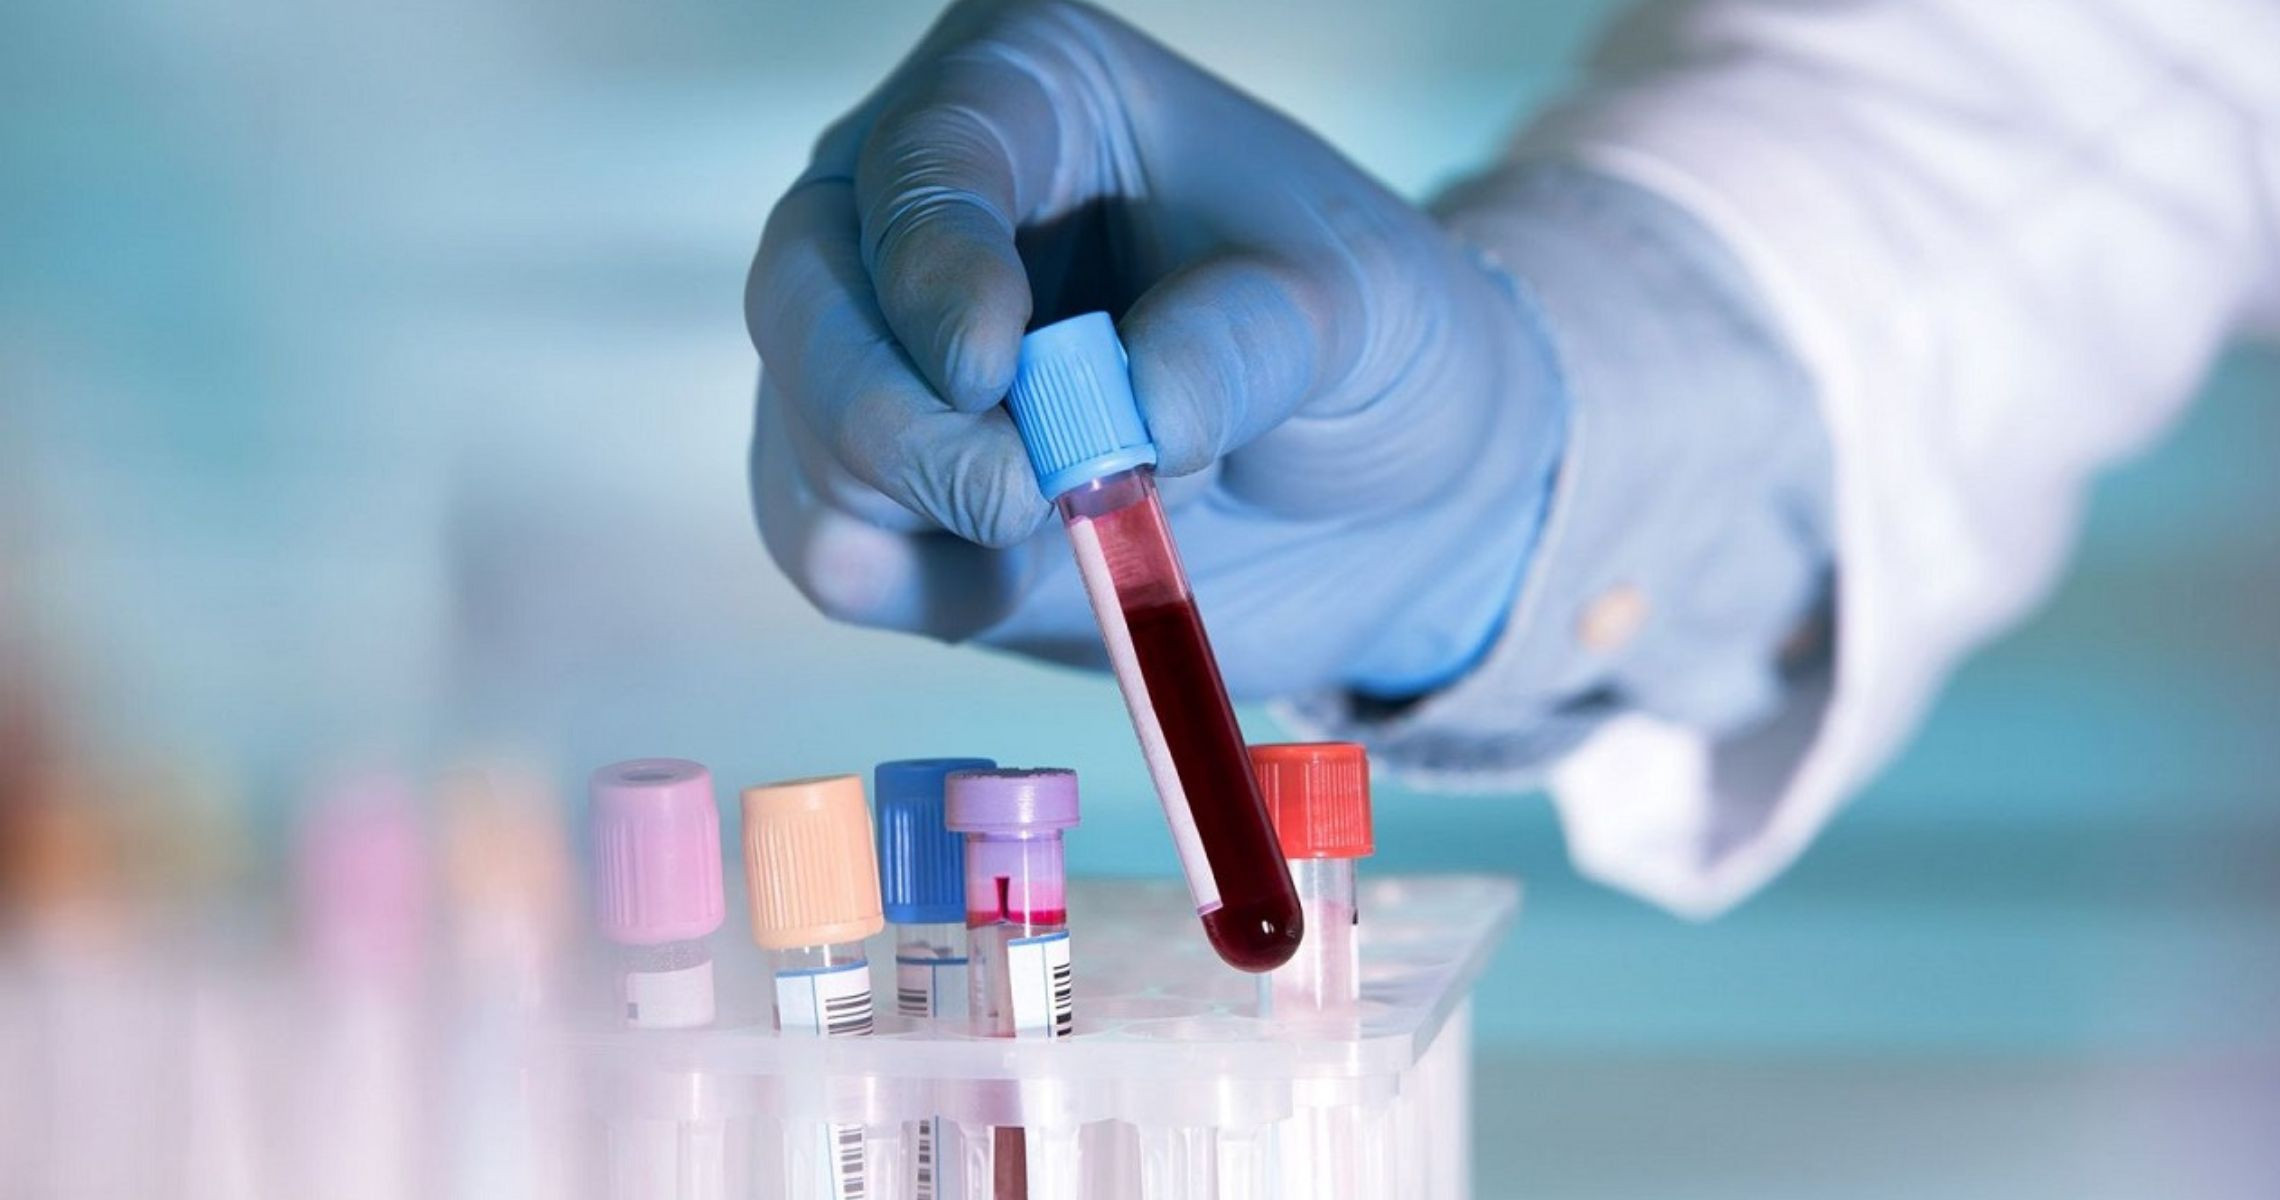 Hướng dẫn xem chỉ số thiếu máu thiếu sắt trong kết quả xét nghiệm